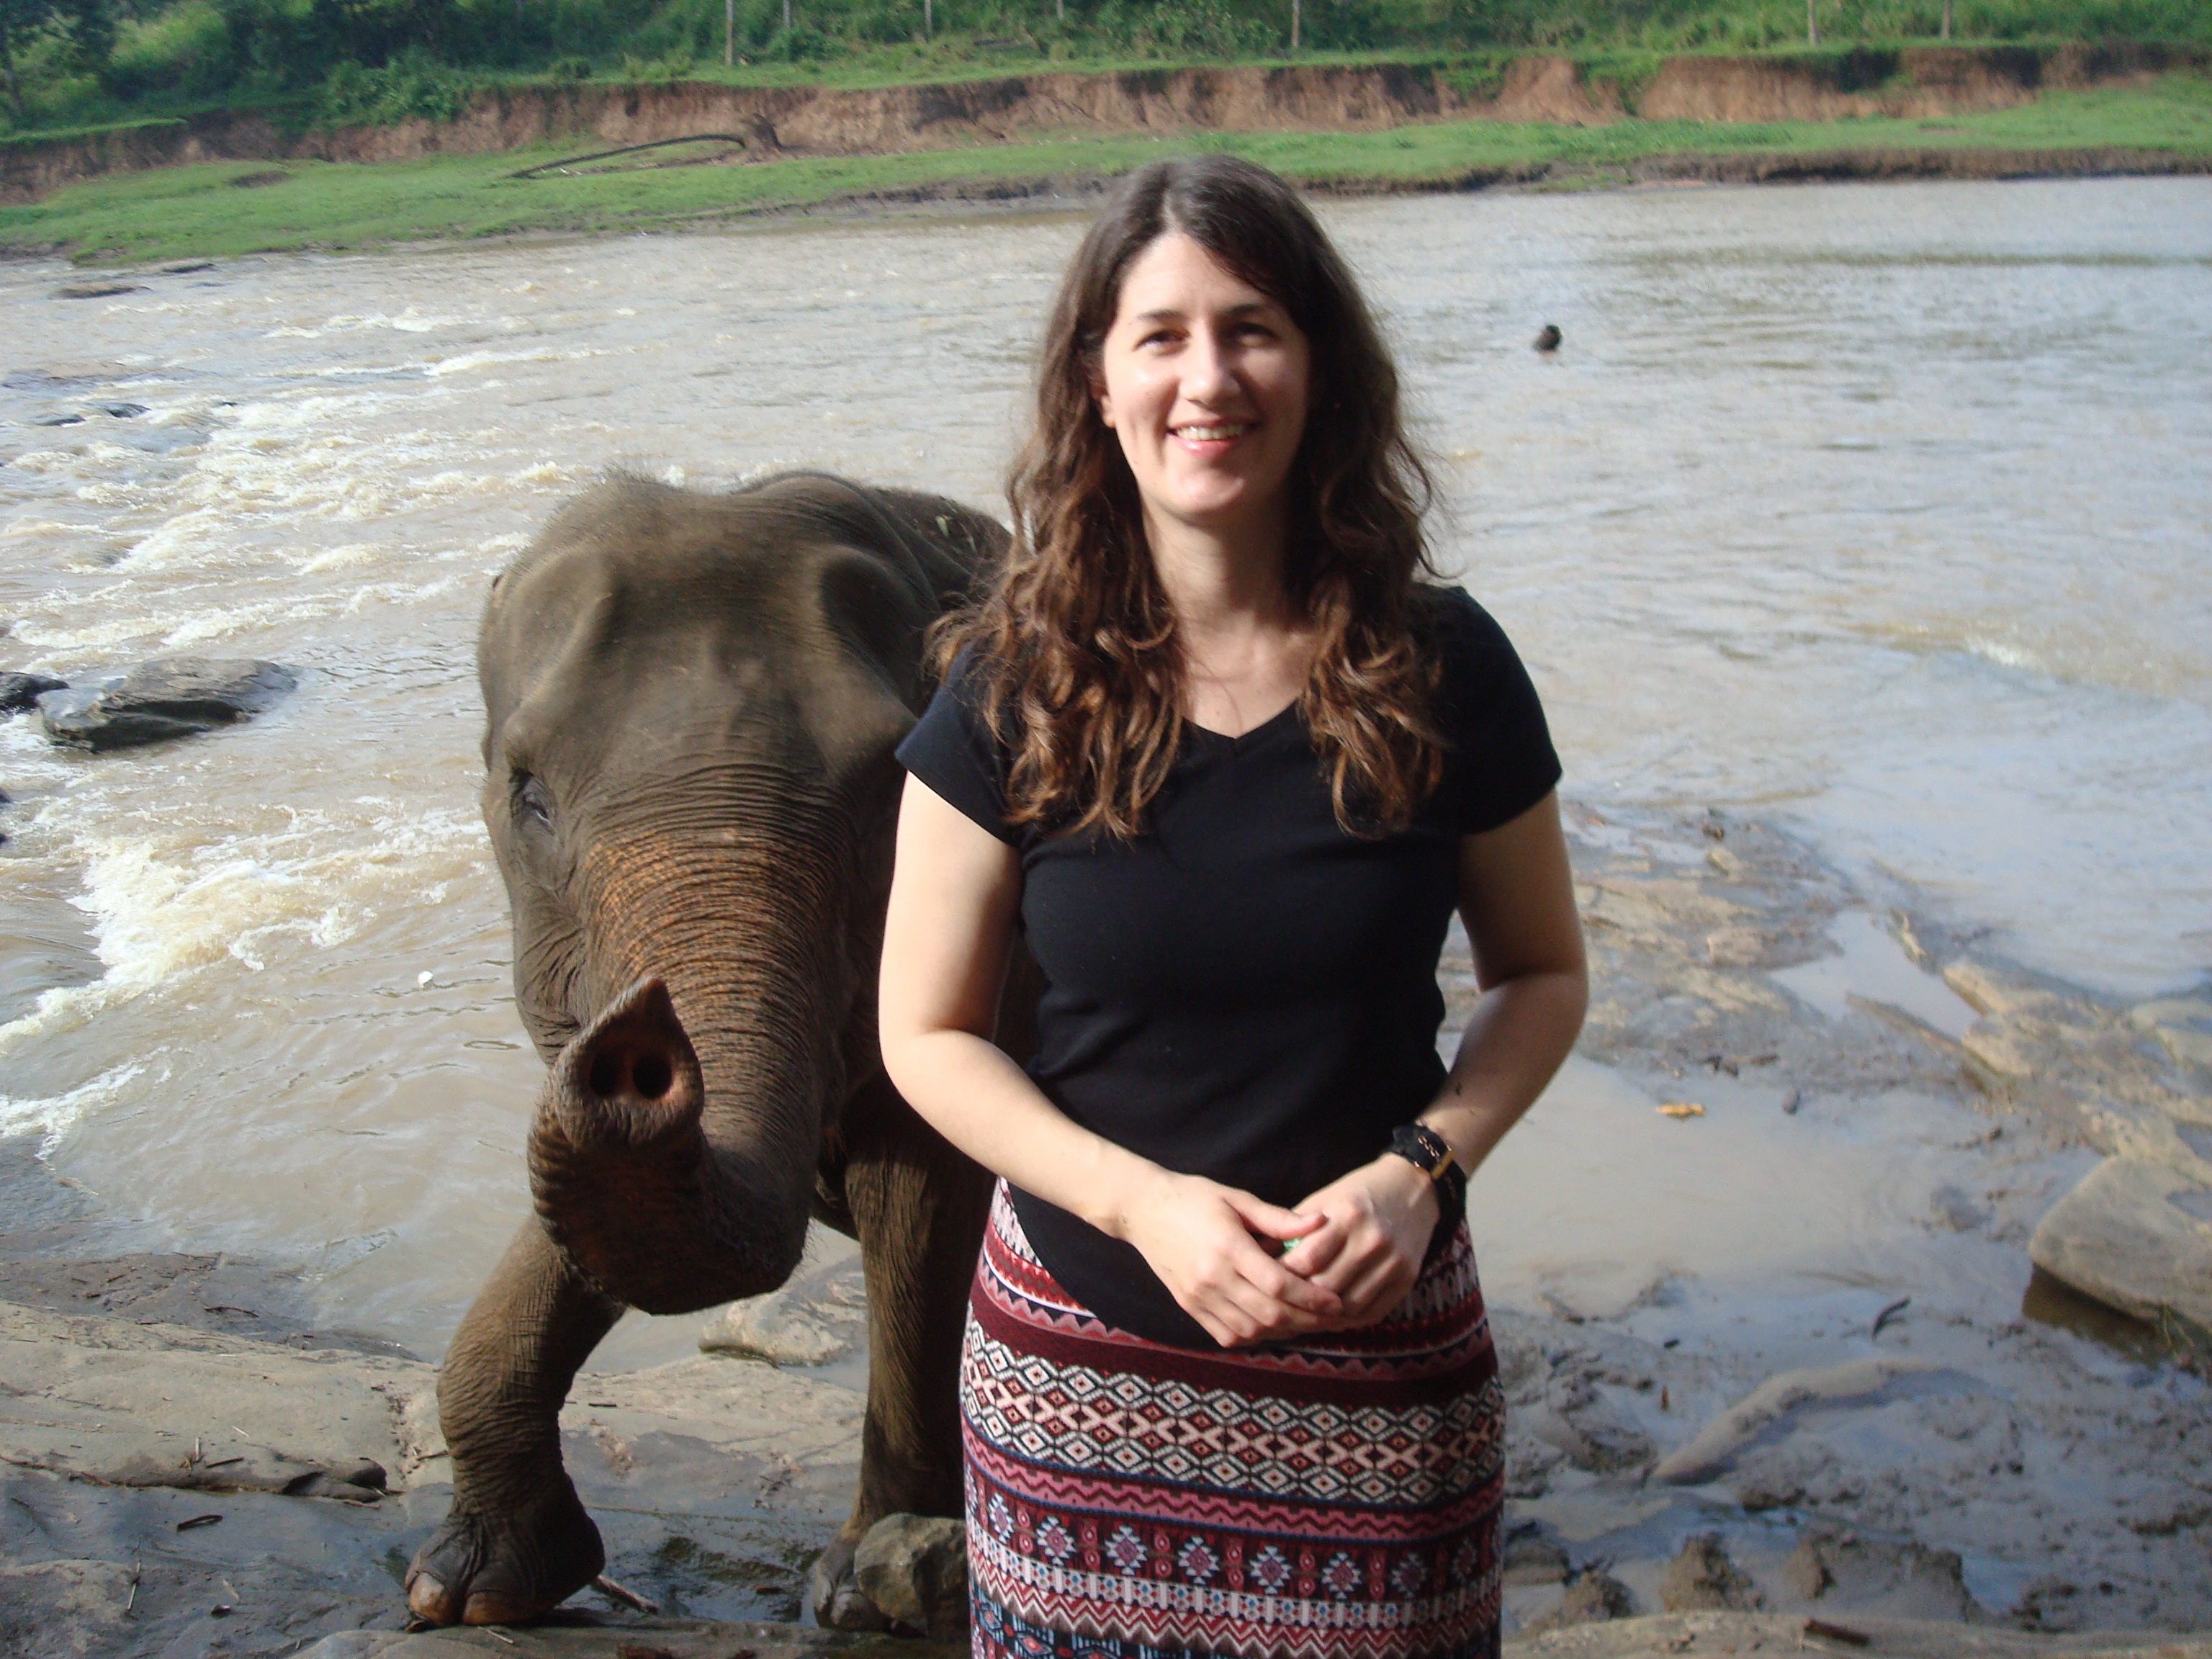 author Tamara with an elephant